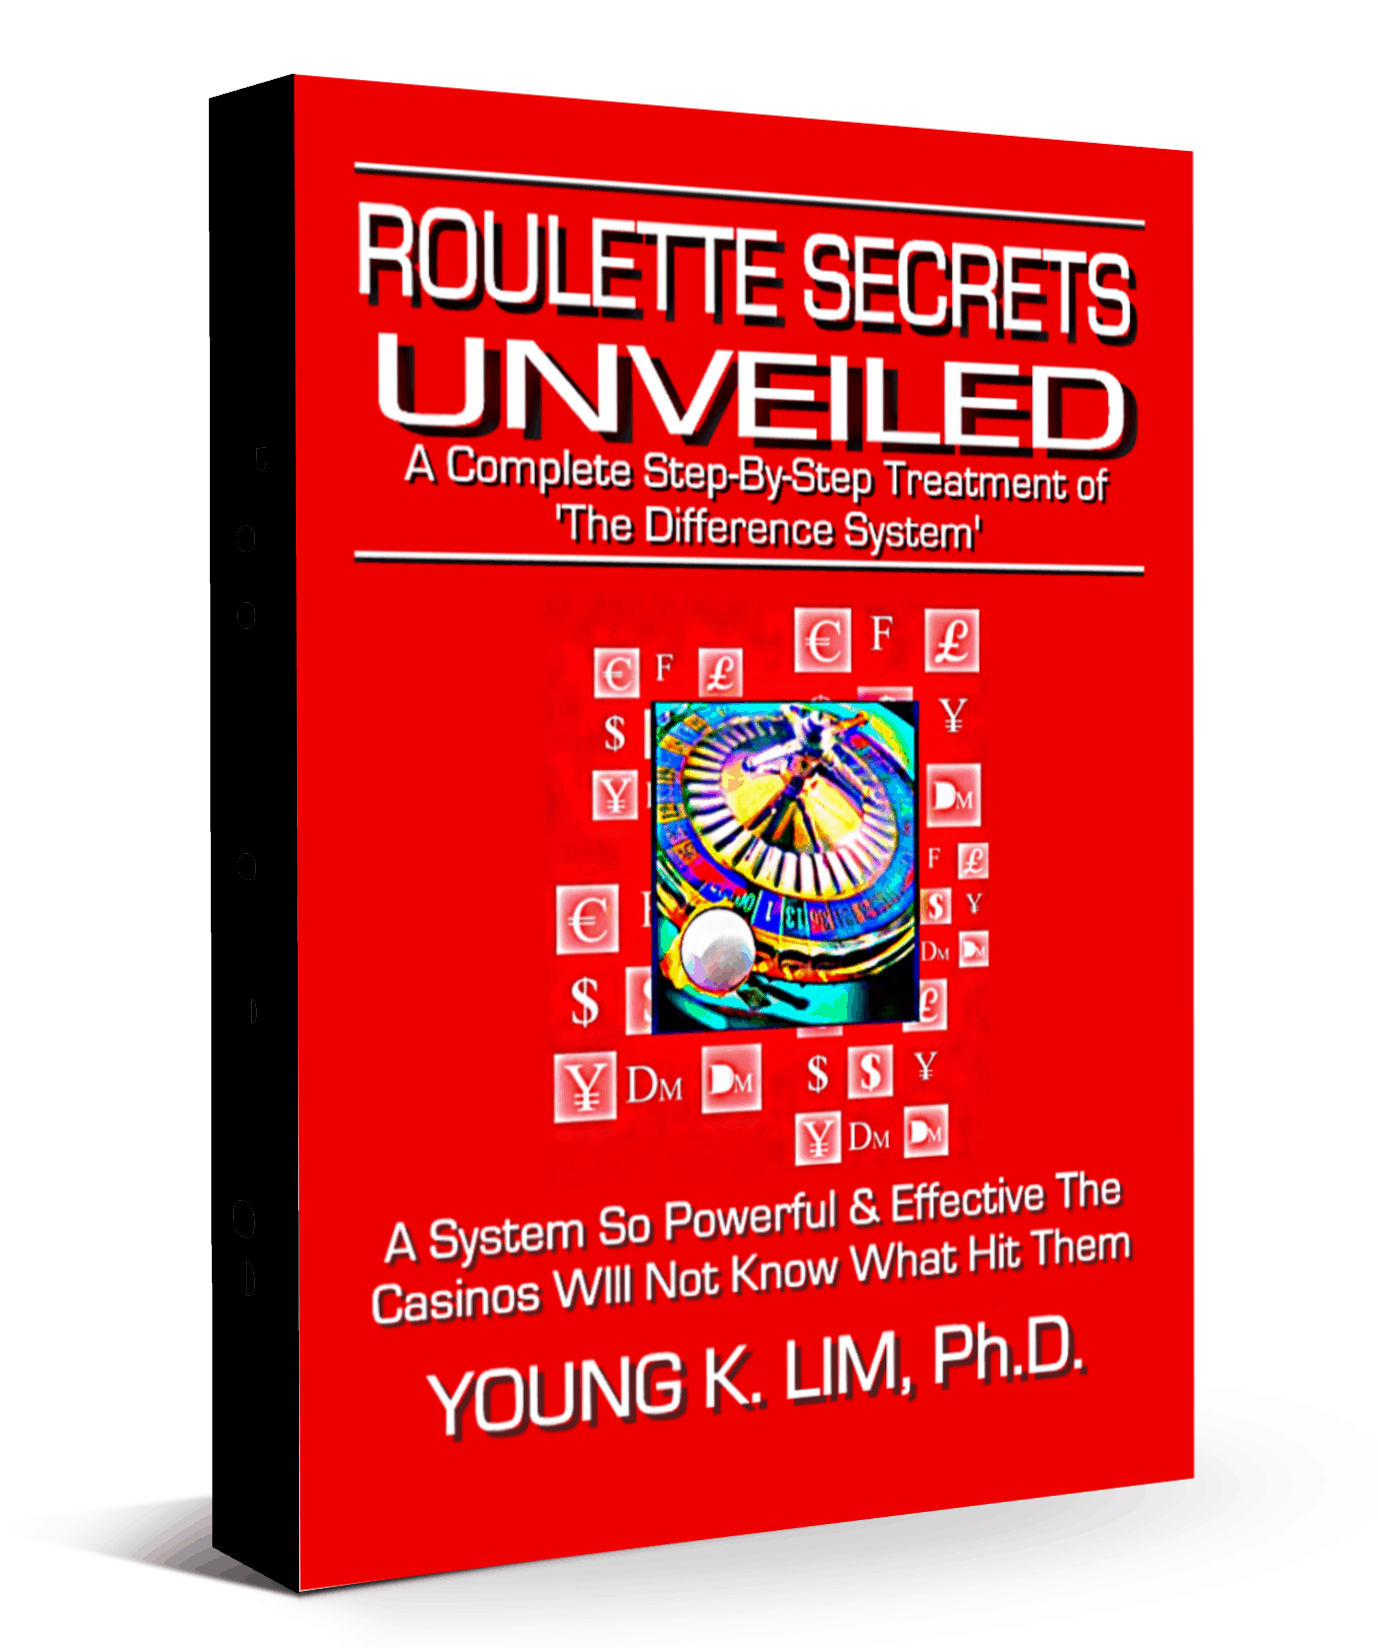 Roulette Secrets unveiled